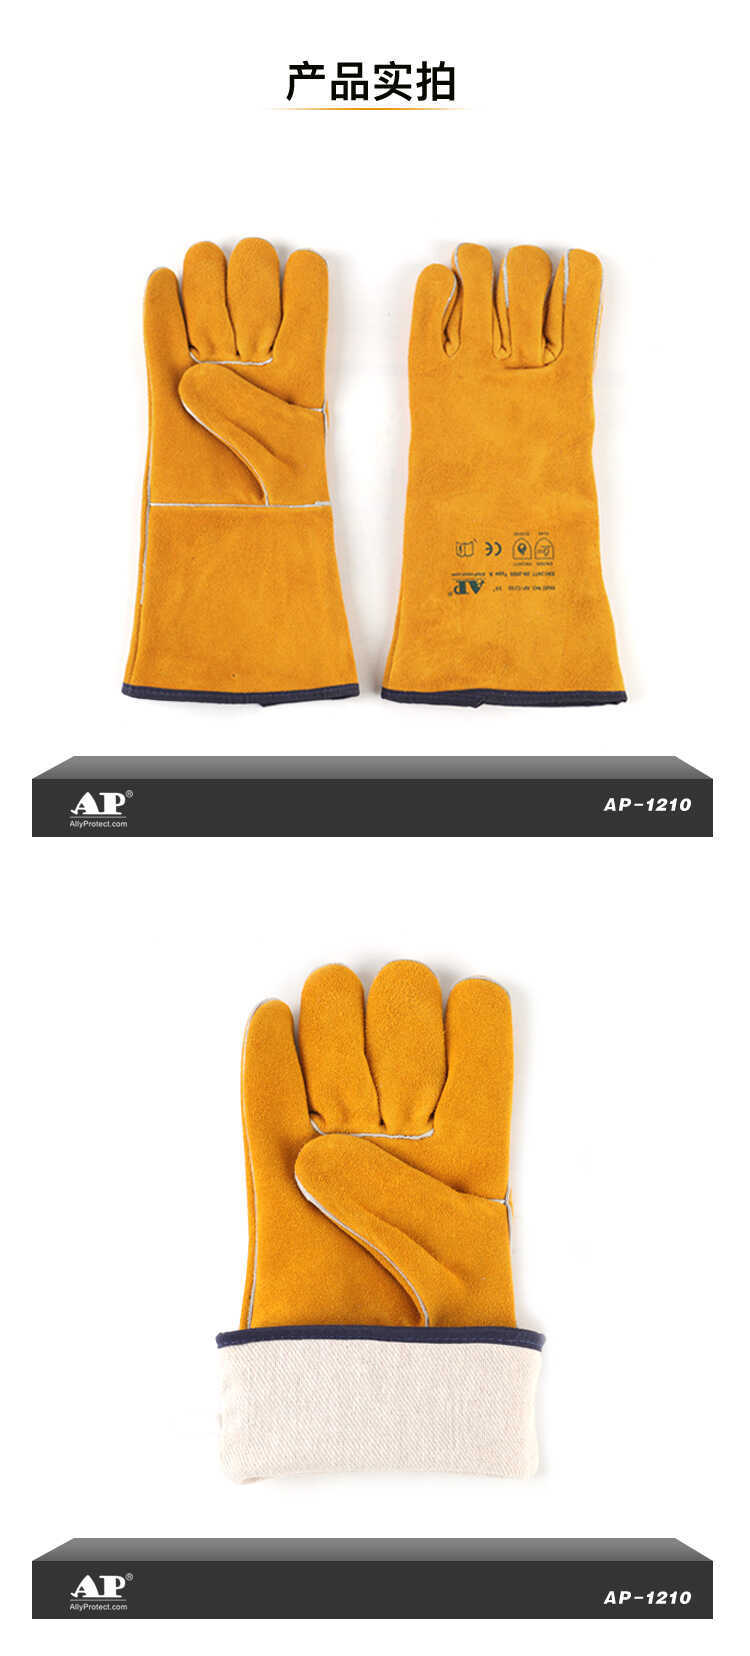 友盟AP-1210金黄色牛二层皮电焊手套图片4